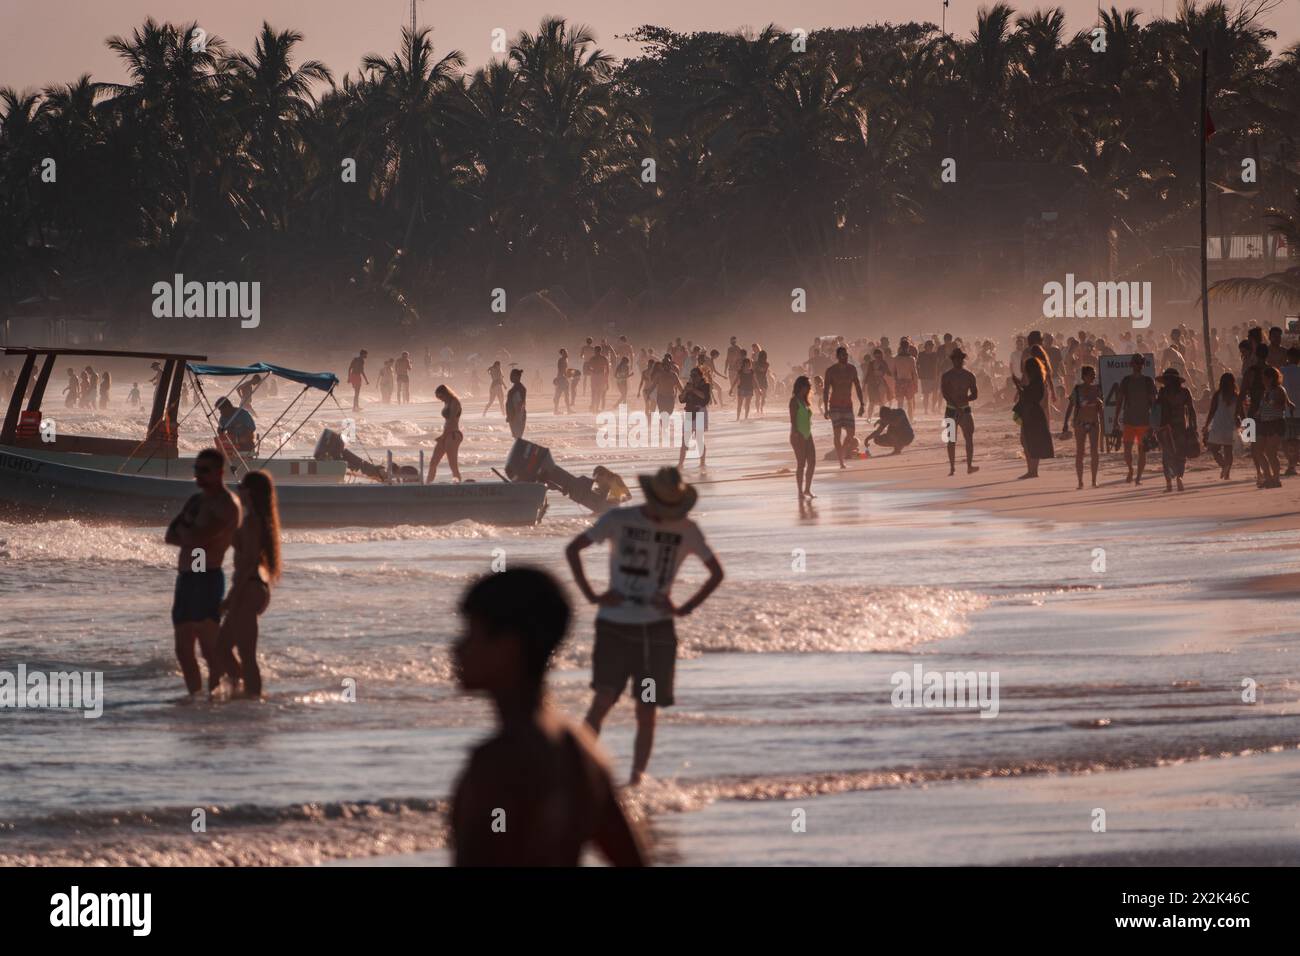 Eine geschäftige Strandszene bei Sonnenuntergang mit Silhouetten zahlreicher Menschen, die den warmen tropischen Sand unter einer Kulisse von Palmen genießen. Stockfoto